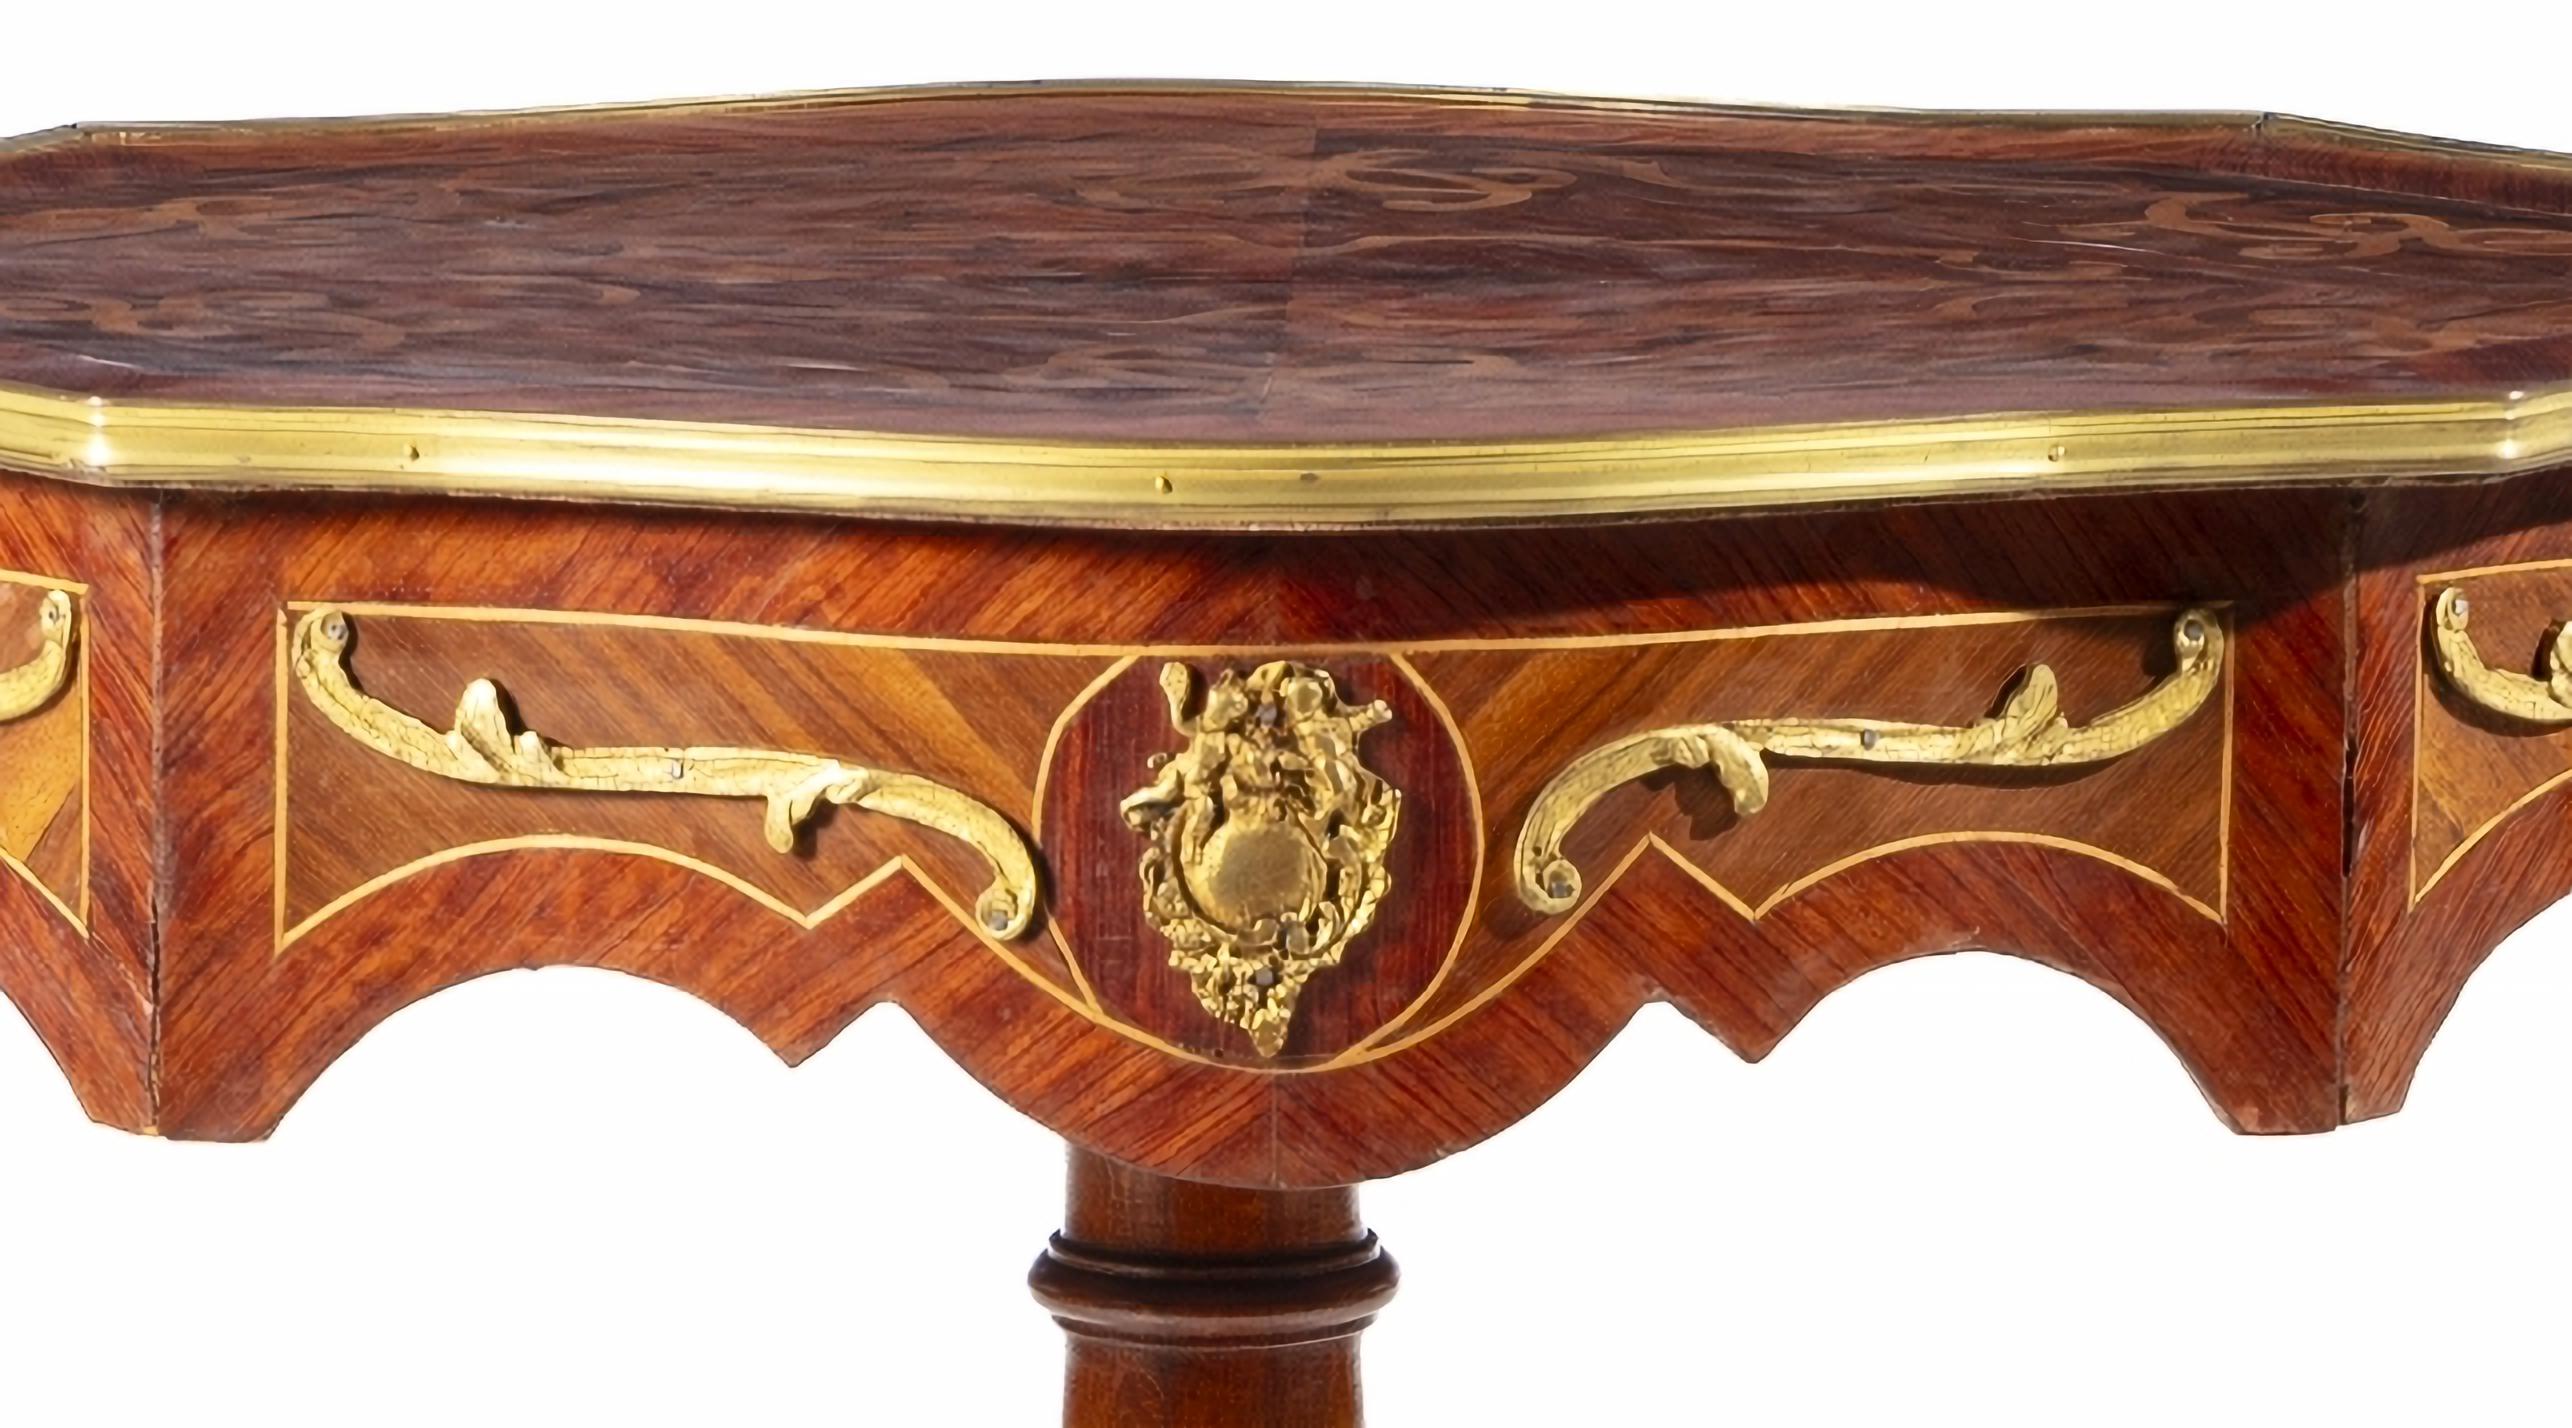 TABLE DE CAFÉ FRANCAISE STYLE LOUIS XV 19ème siècle

plaqué de divers bois, décoré de motifs végétaux. 
en métal jaune.
Dim. : 79 x 80 x 60 cm
bonnes conditions
